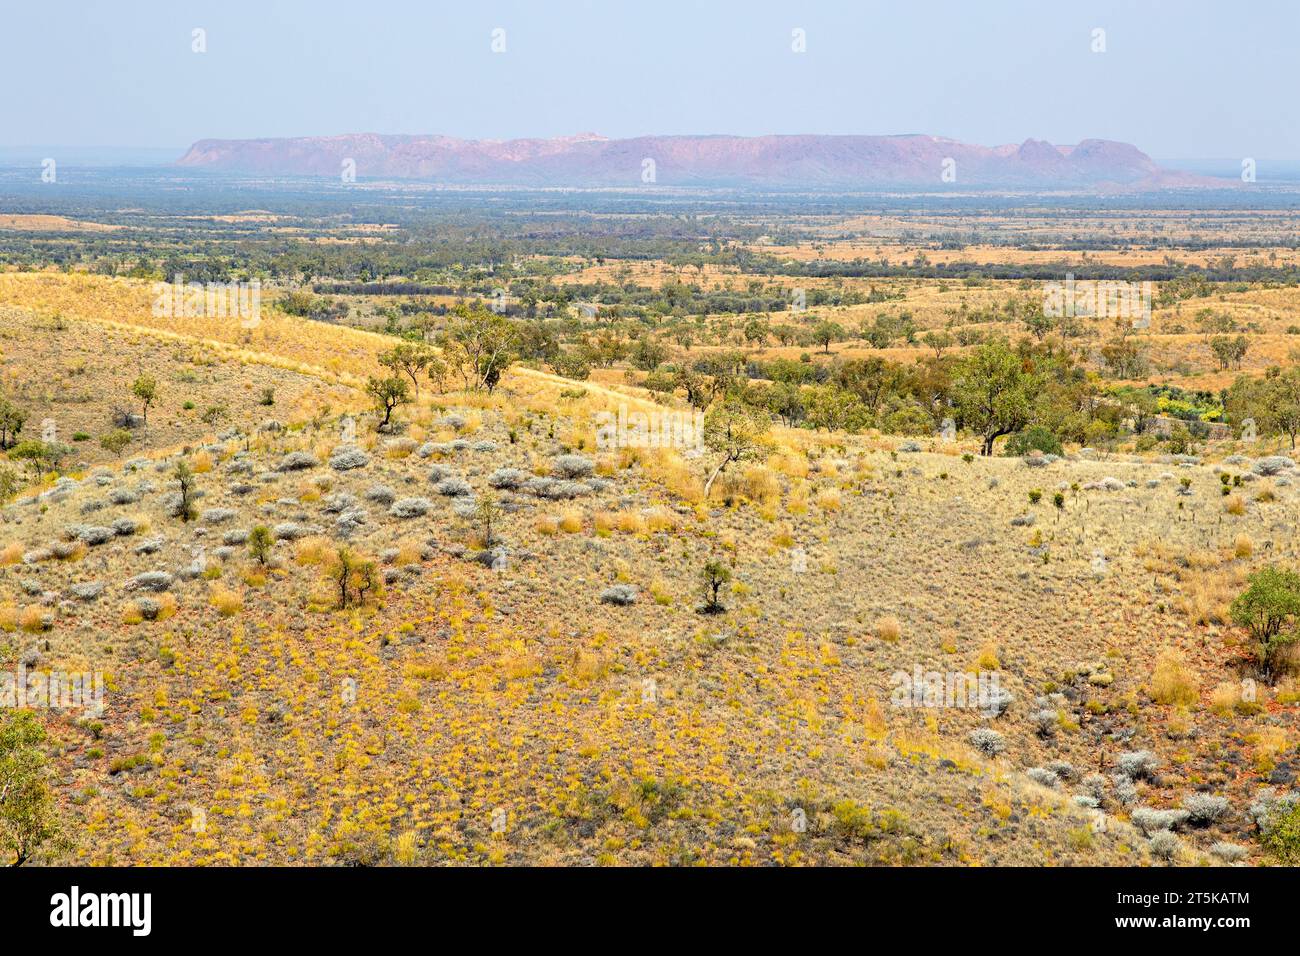 Vista a través del desierto a Tnorala (Gosse Bluff) Foto de stock